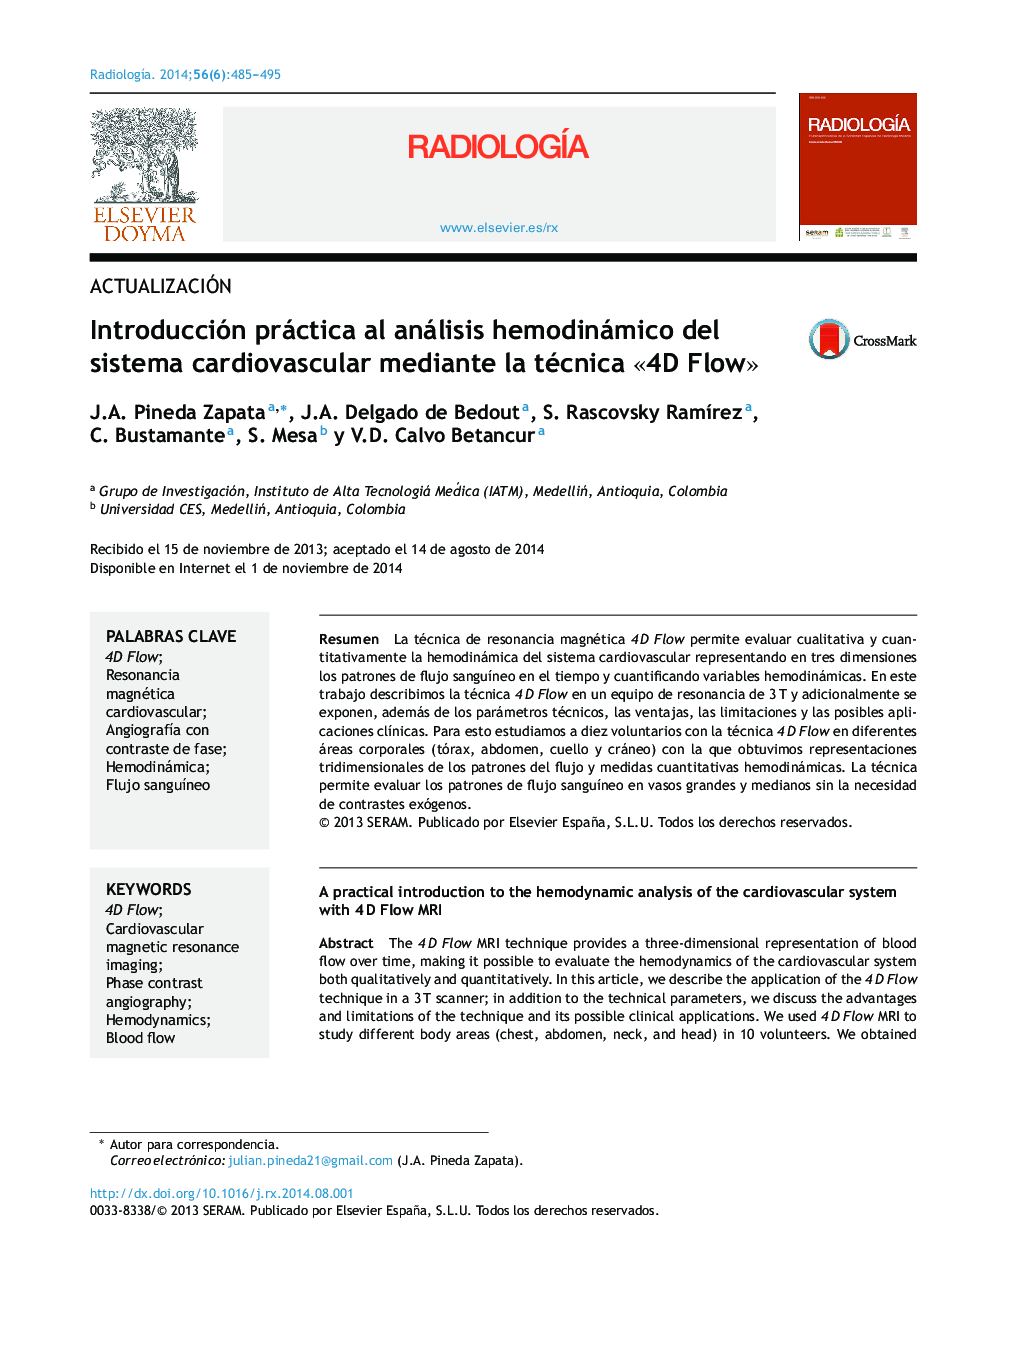 Introducción práctica al análisis hemodinámico del sistema cardiovascular mediante la técnica Â«4D FlowÂ»